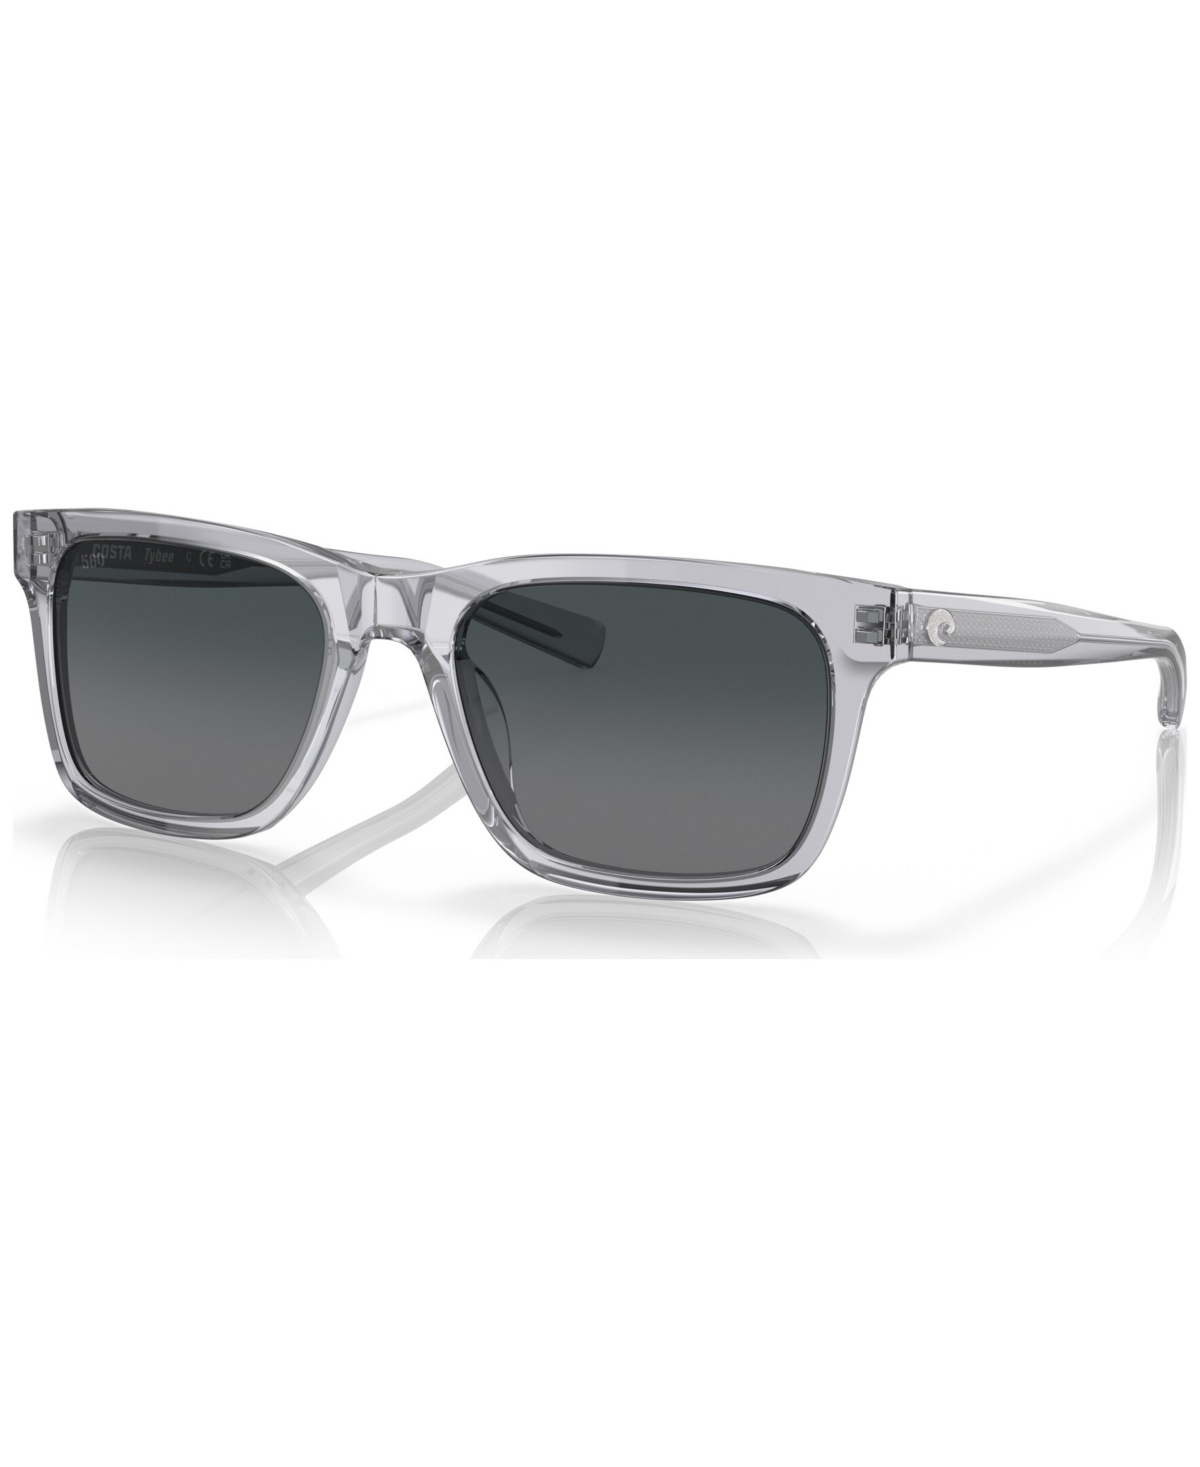 Men's Polarized Sunglasses, Tybee - Shiny Light Crystal Gray